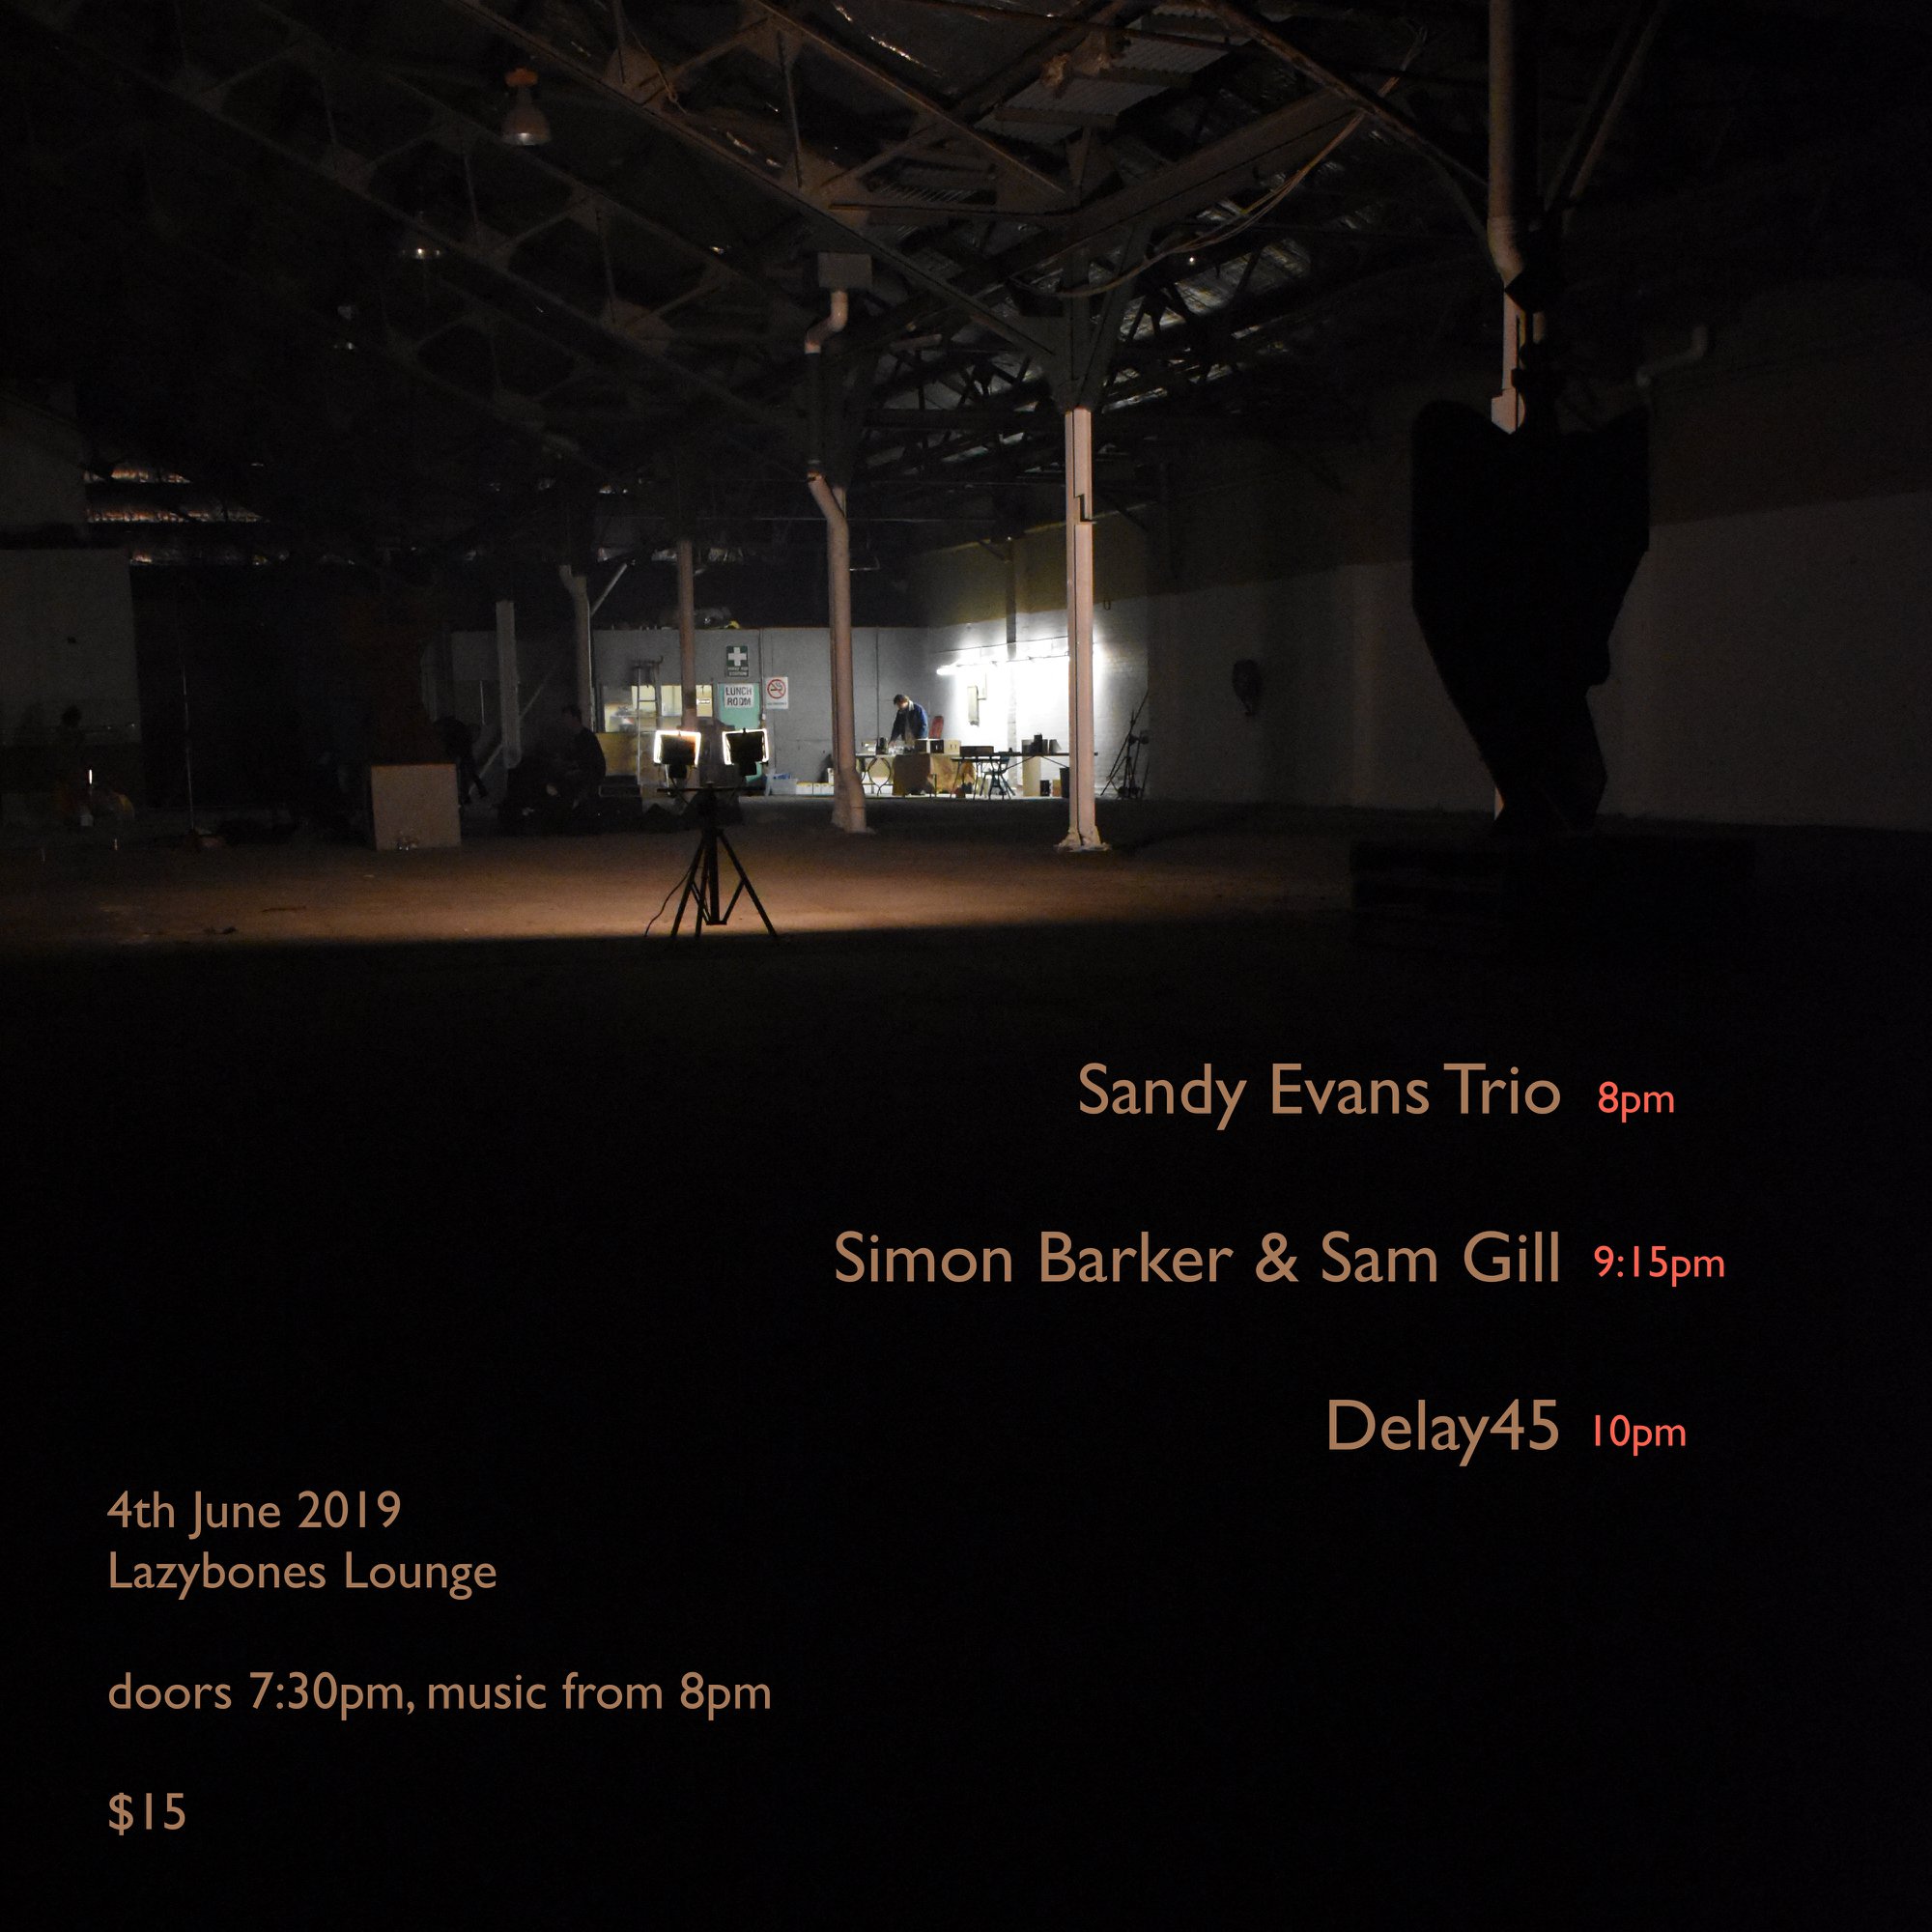 Sany Evans Trio Lazybones Lounge 4 June 2019